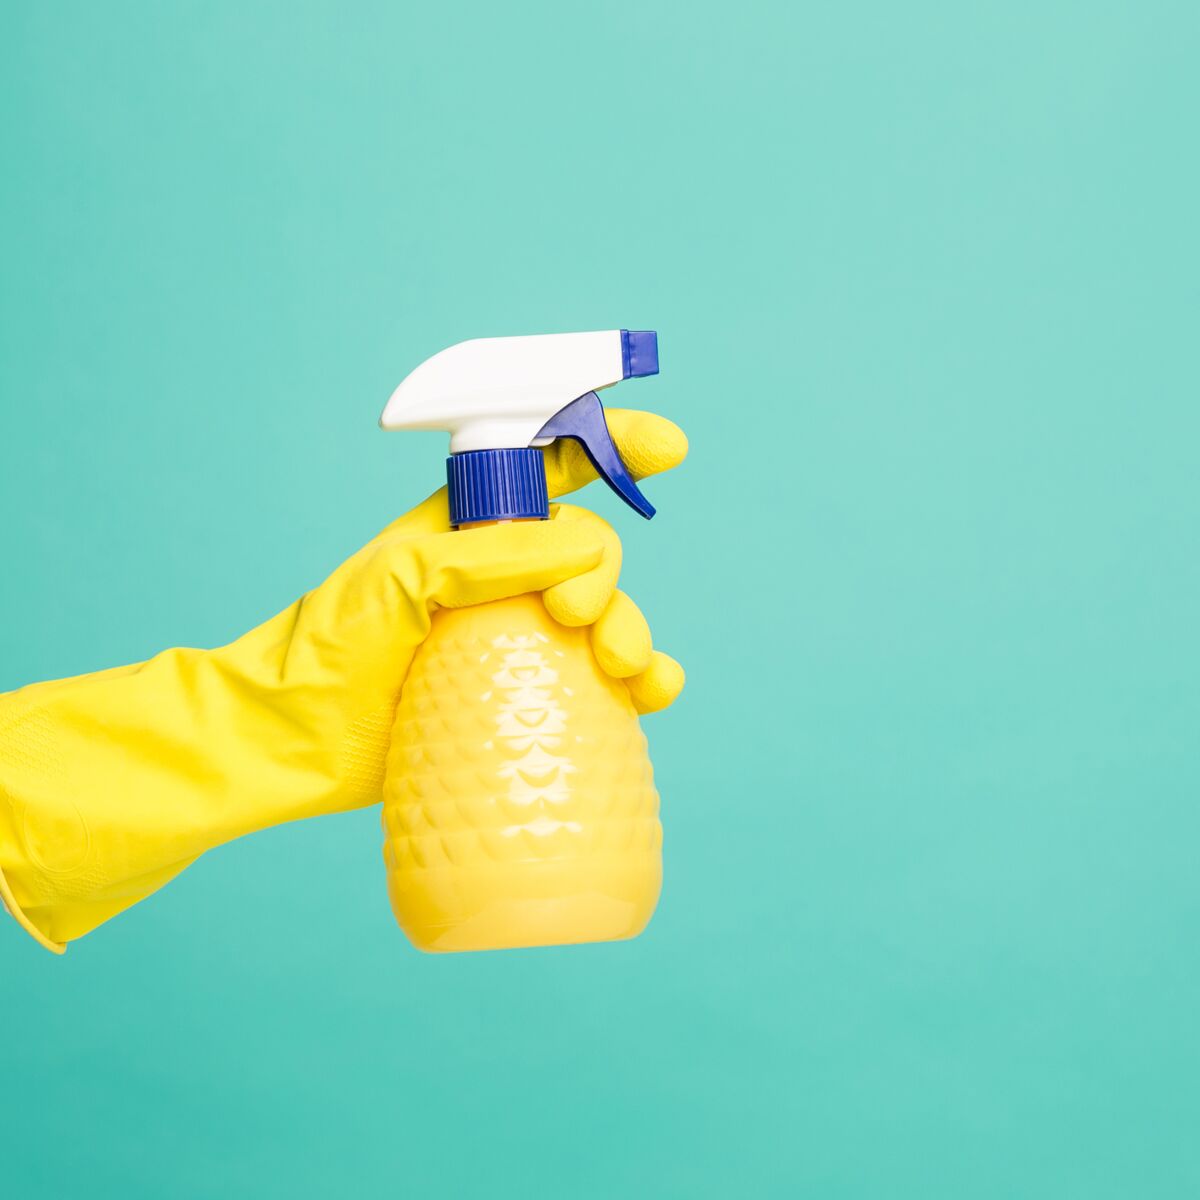 Désinfectant, nettoyant pour la maison : fabriquer ses propres